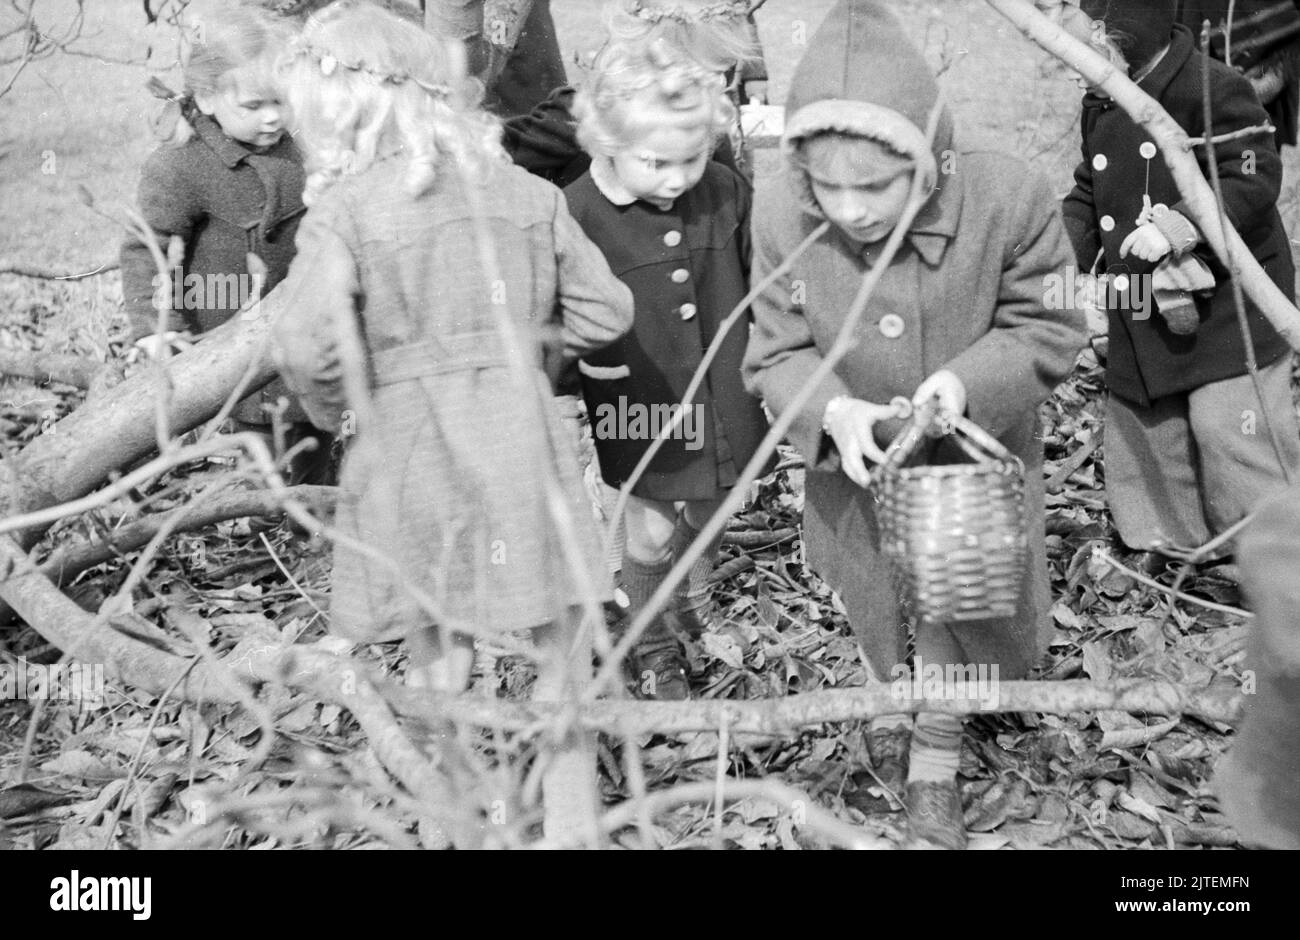 Kinder bei der Ostereier-Suche im Park am Bahnhof Lankwitz, die von einer Einhet der amerikanischen Polizei veranstaltet wurde, Berlin, Deutschland 1947. Stock Photo